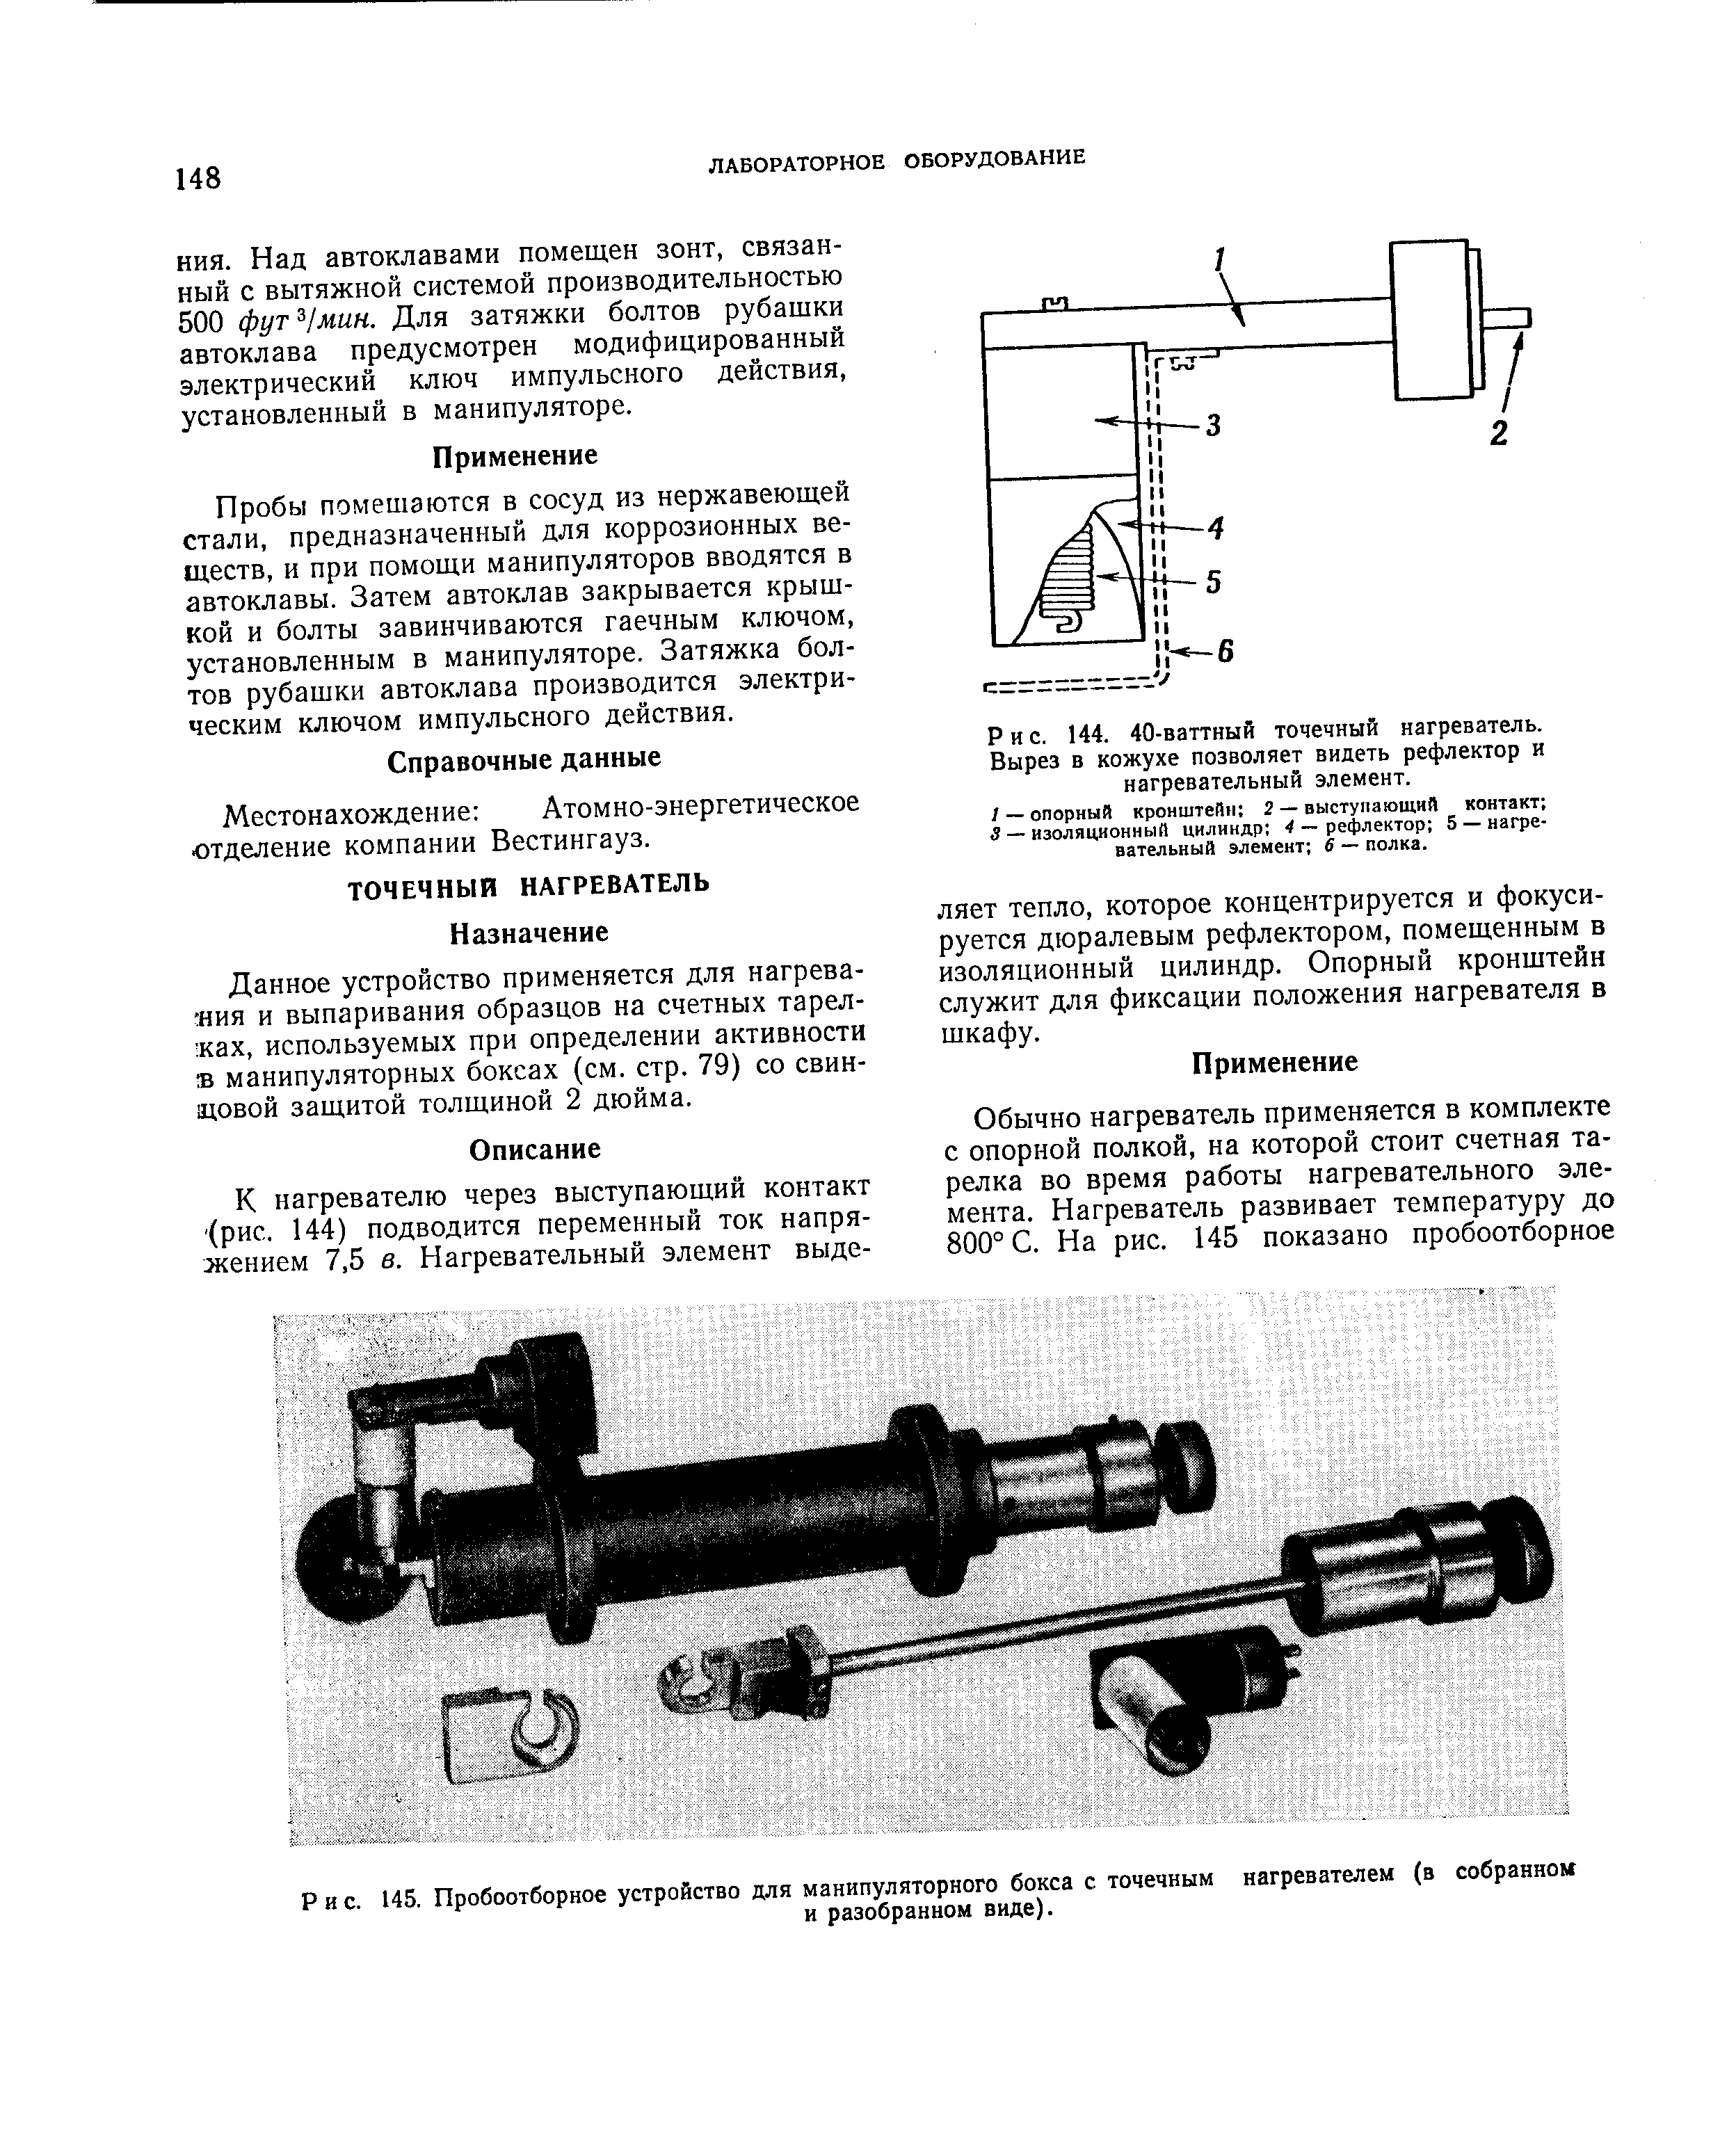 Рис. 145. Пробоотборное устройство для манипуляторного бокса с точечным нагревателем (в собранном
